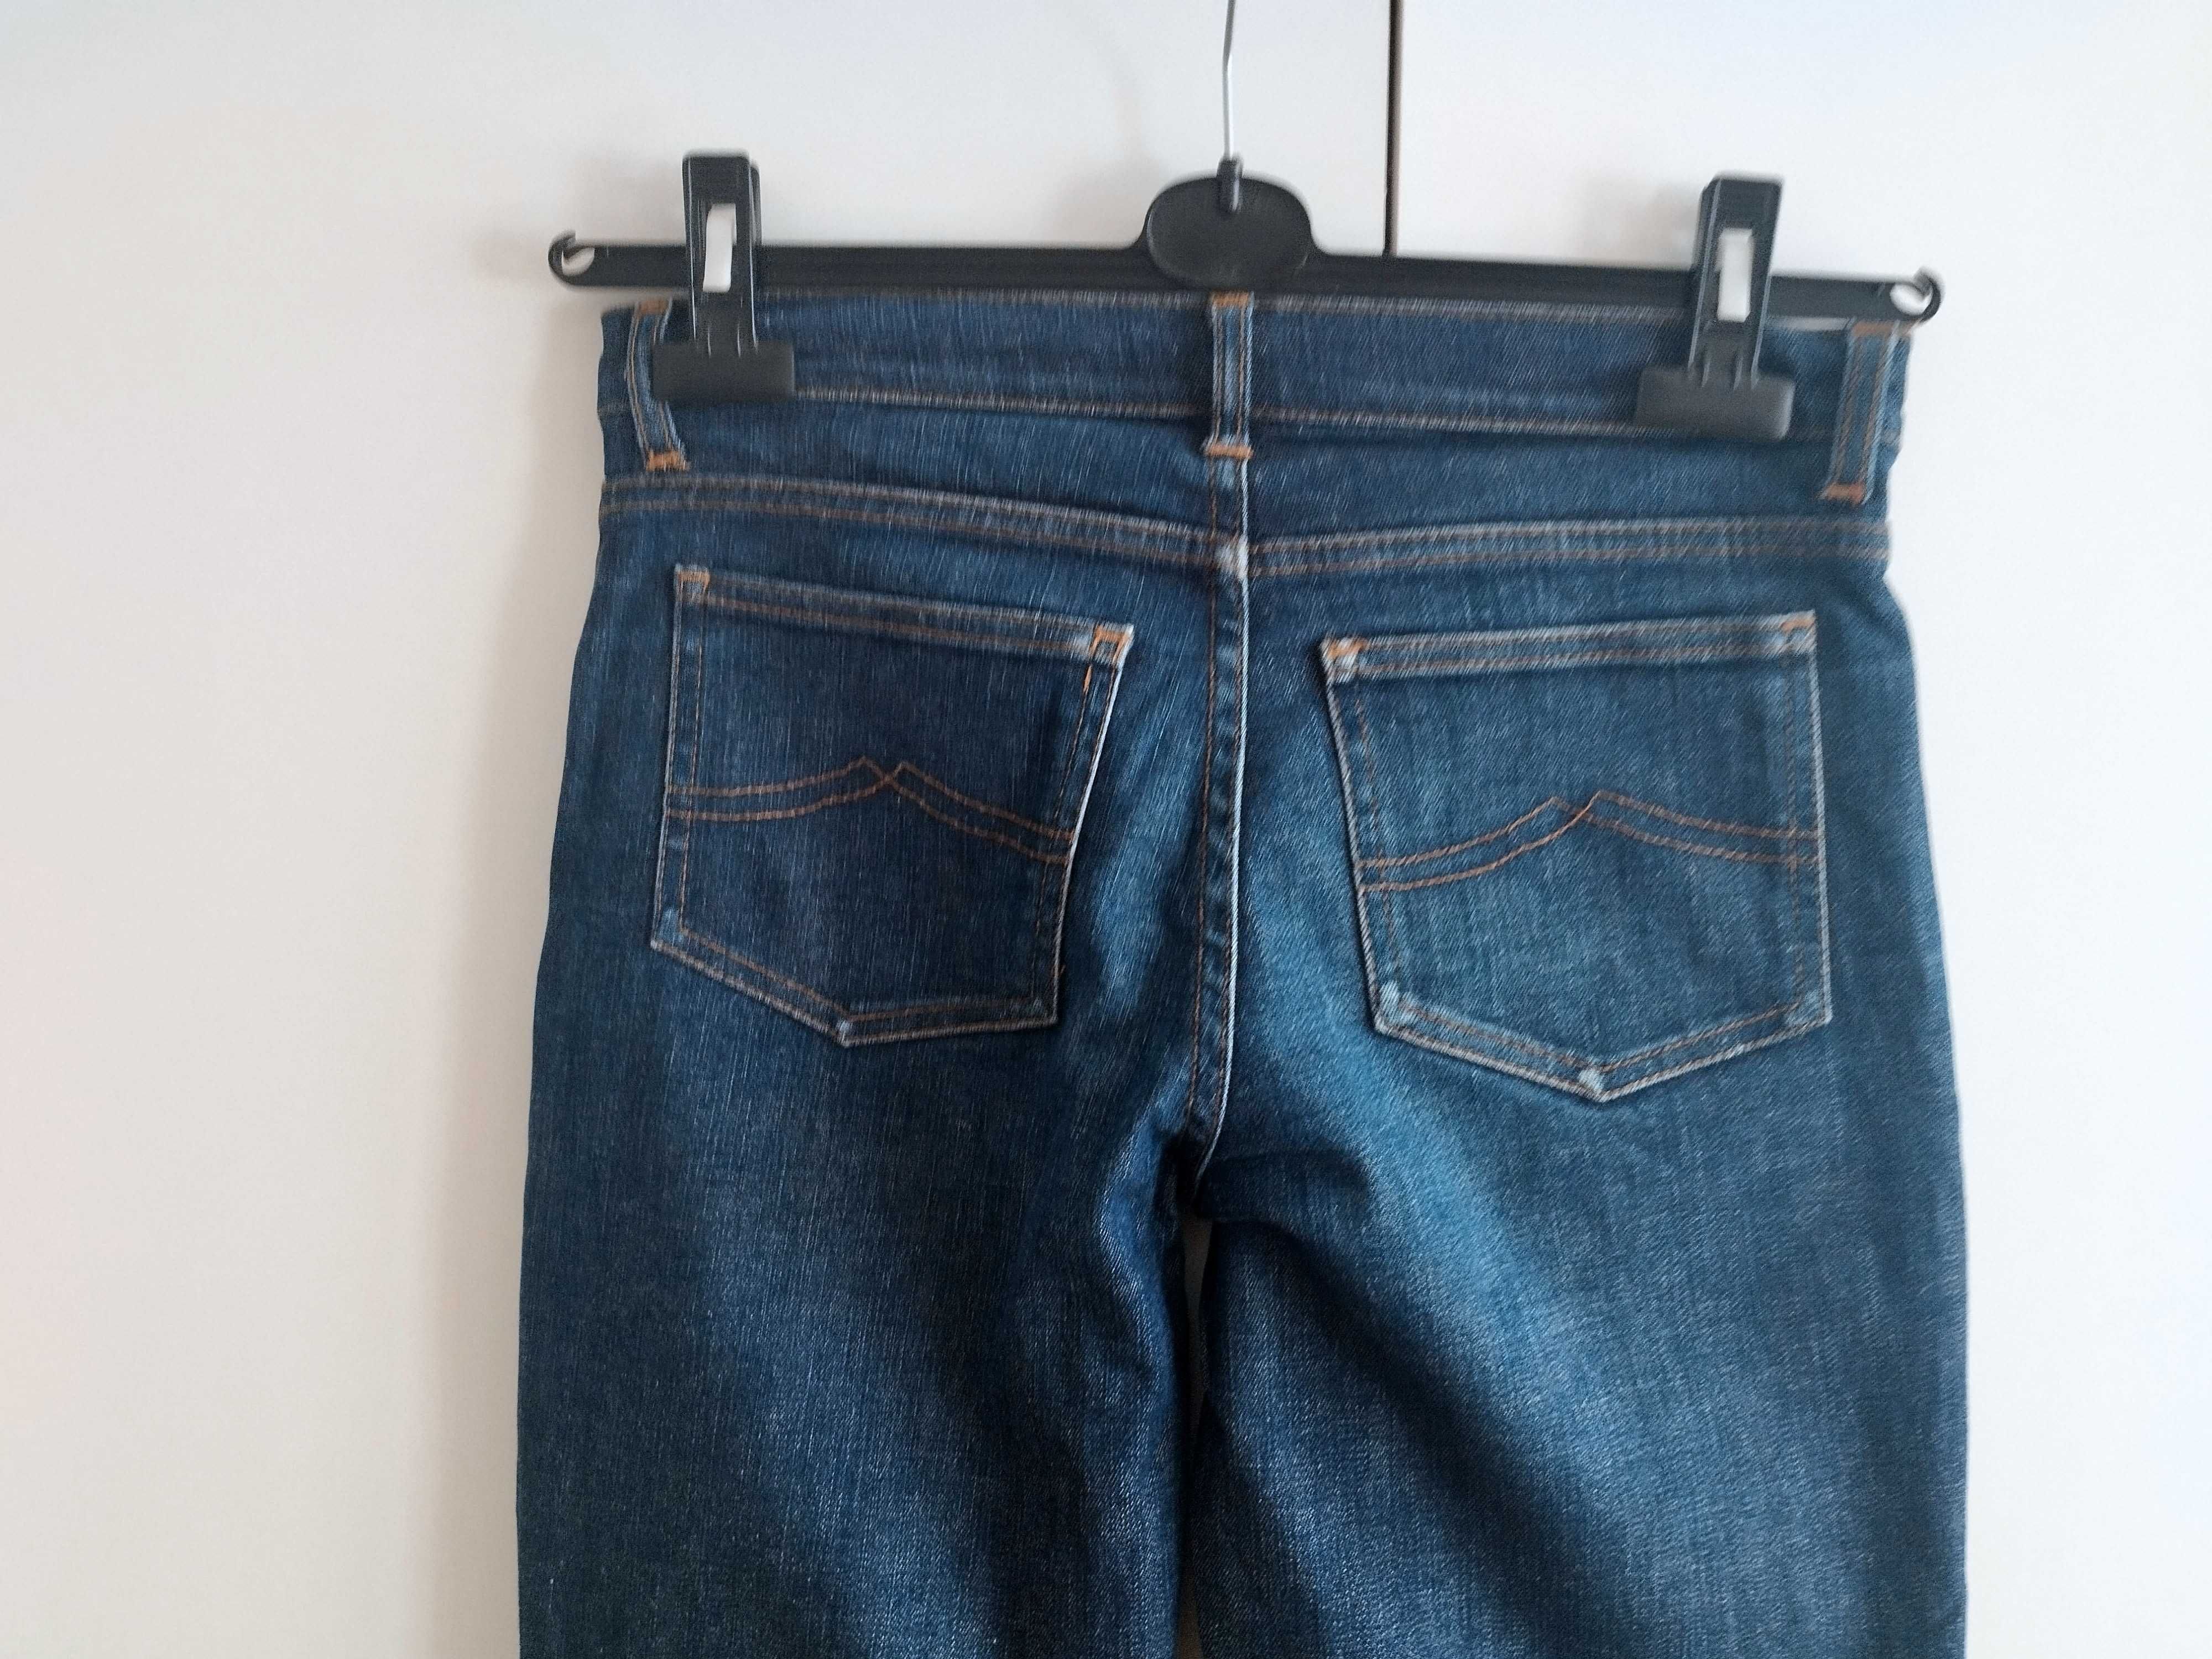 Spodnie damskie H&M, roz. 36, dżinsowe jeansy granatowe